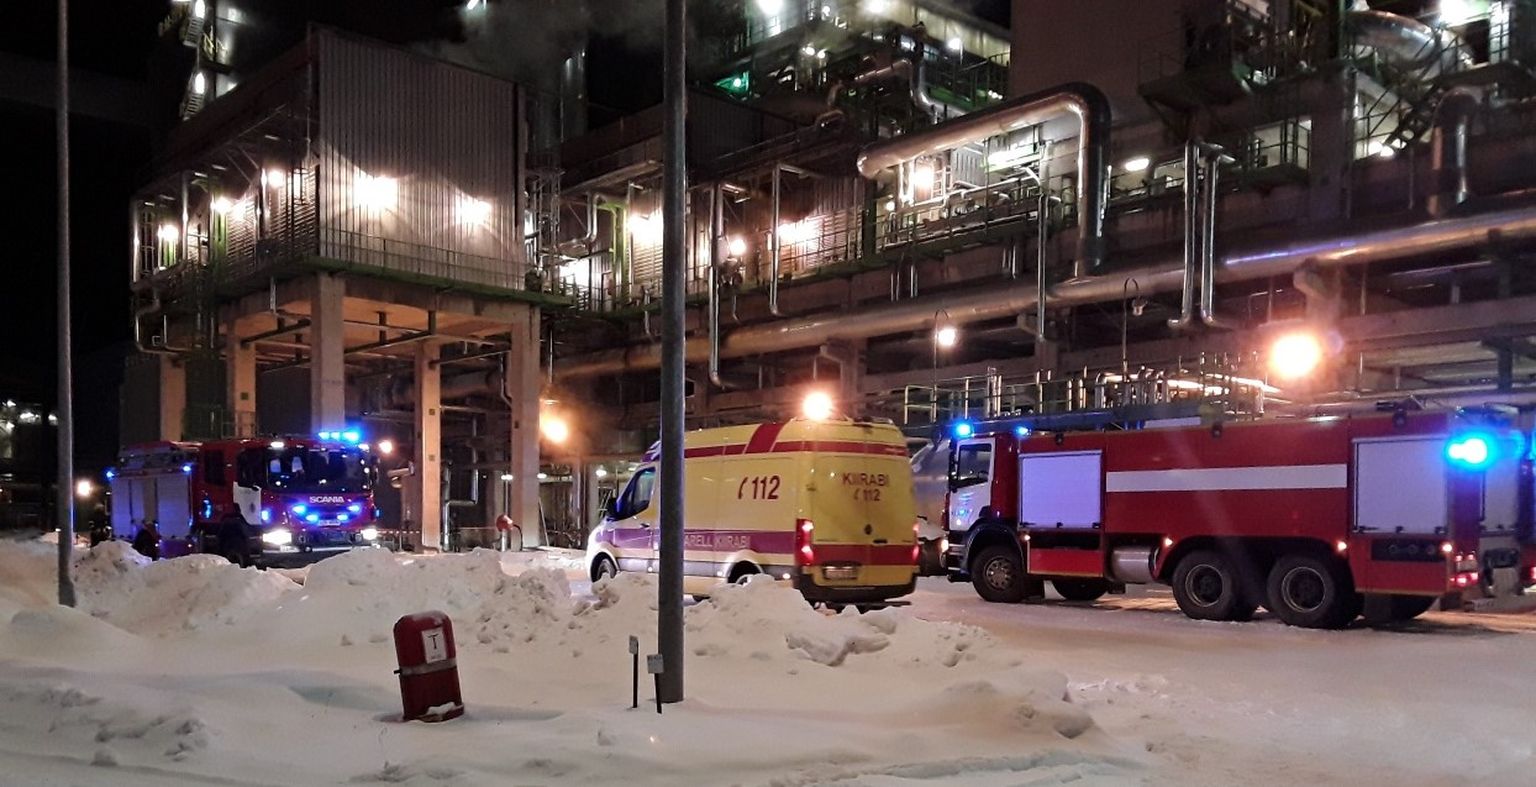 На место происшествия прибыли отряд спасателей "Eesti Energia", а также спасательные подразделения Силламяэ и Нарвы, скорая помощь и полиция.